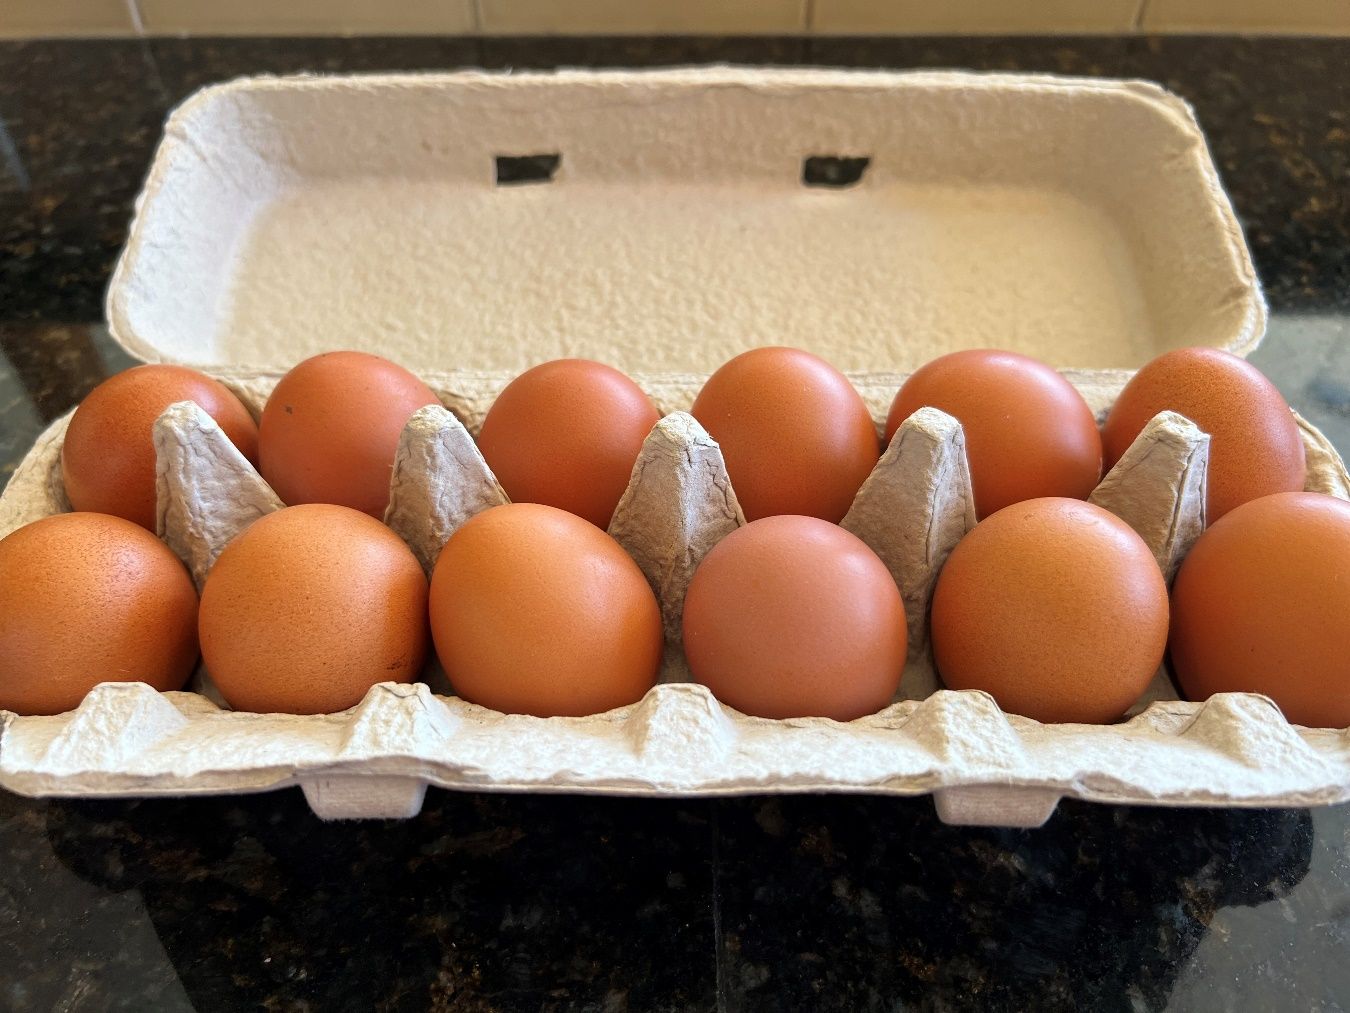 A carton of eggs Description automatically generated